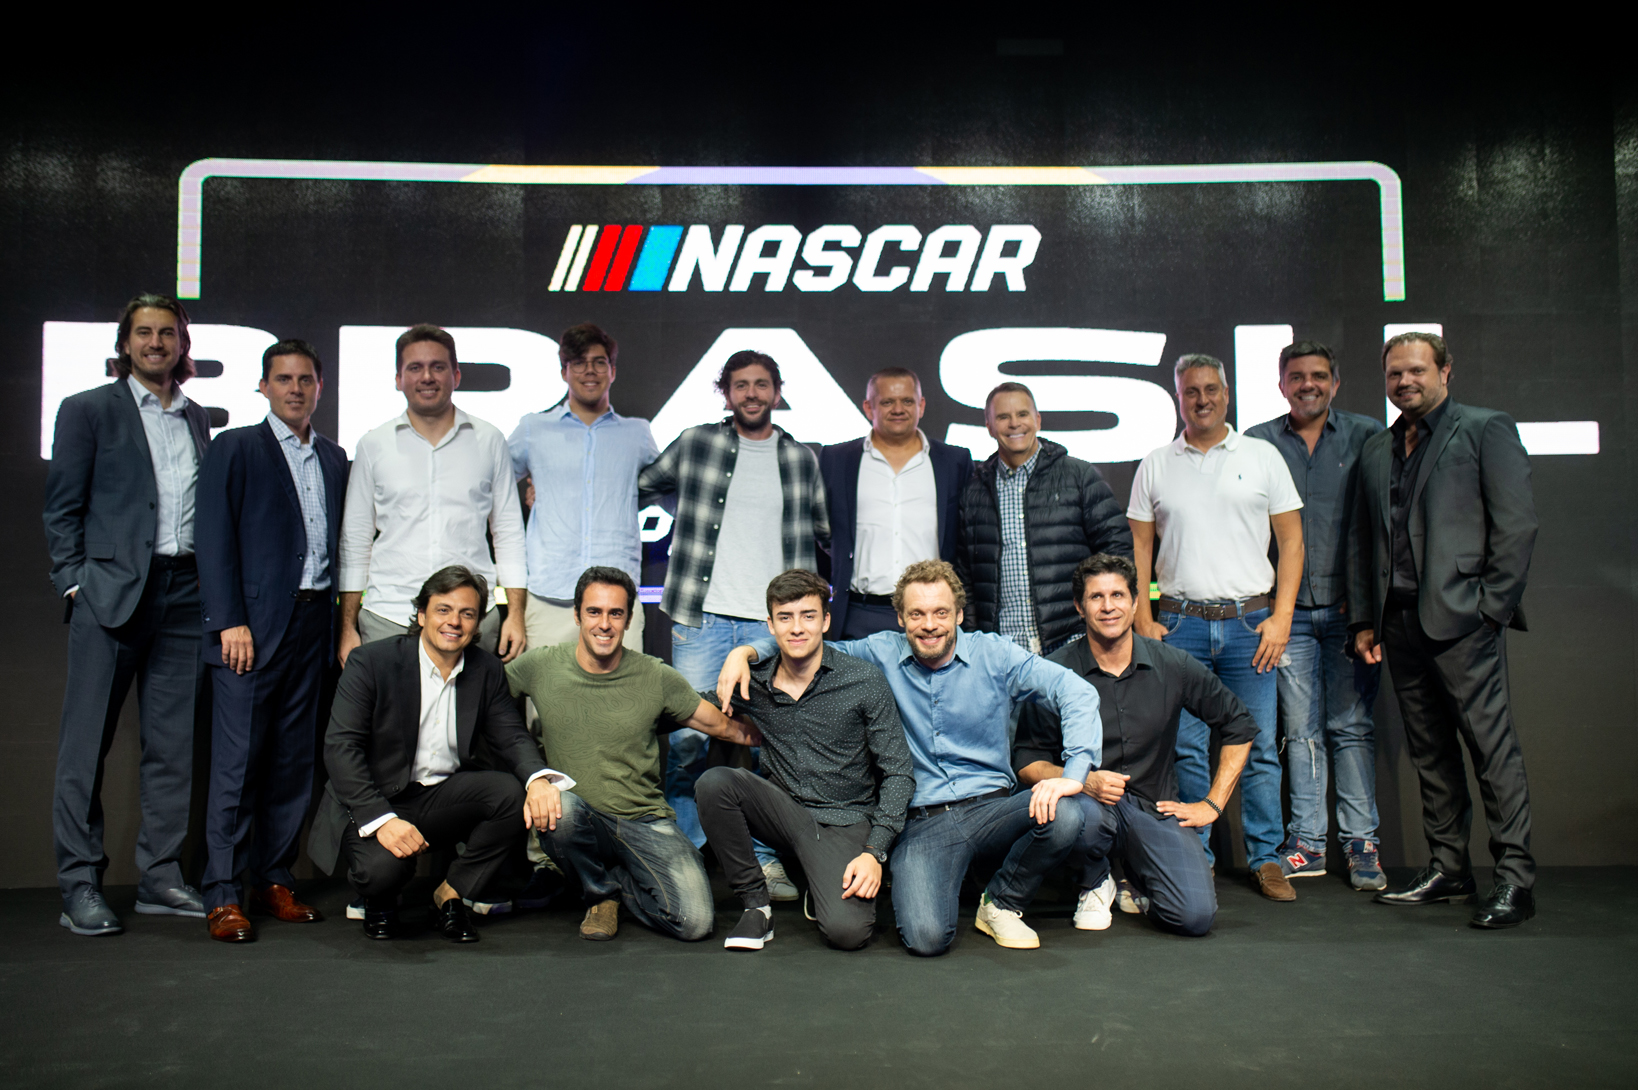 NASCAR Brasil - Sprint Race